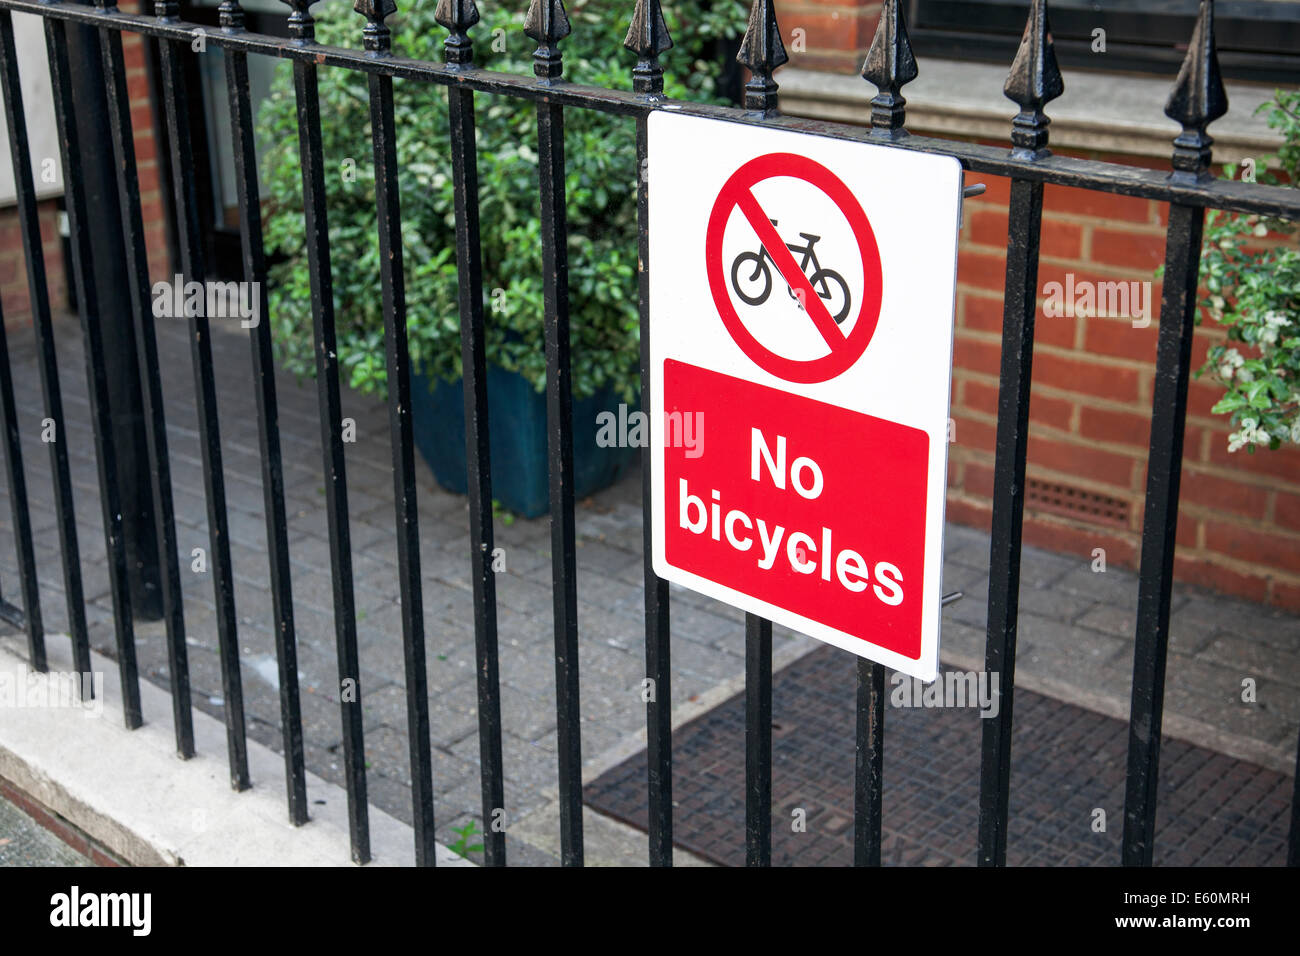 Melden Sie keine Fahrräder in Nord-London - Fahrräder wird angekettet an der Reling zu verhindern Stockfoto